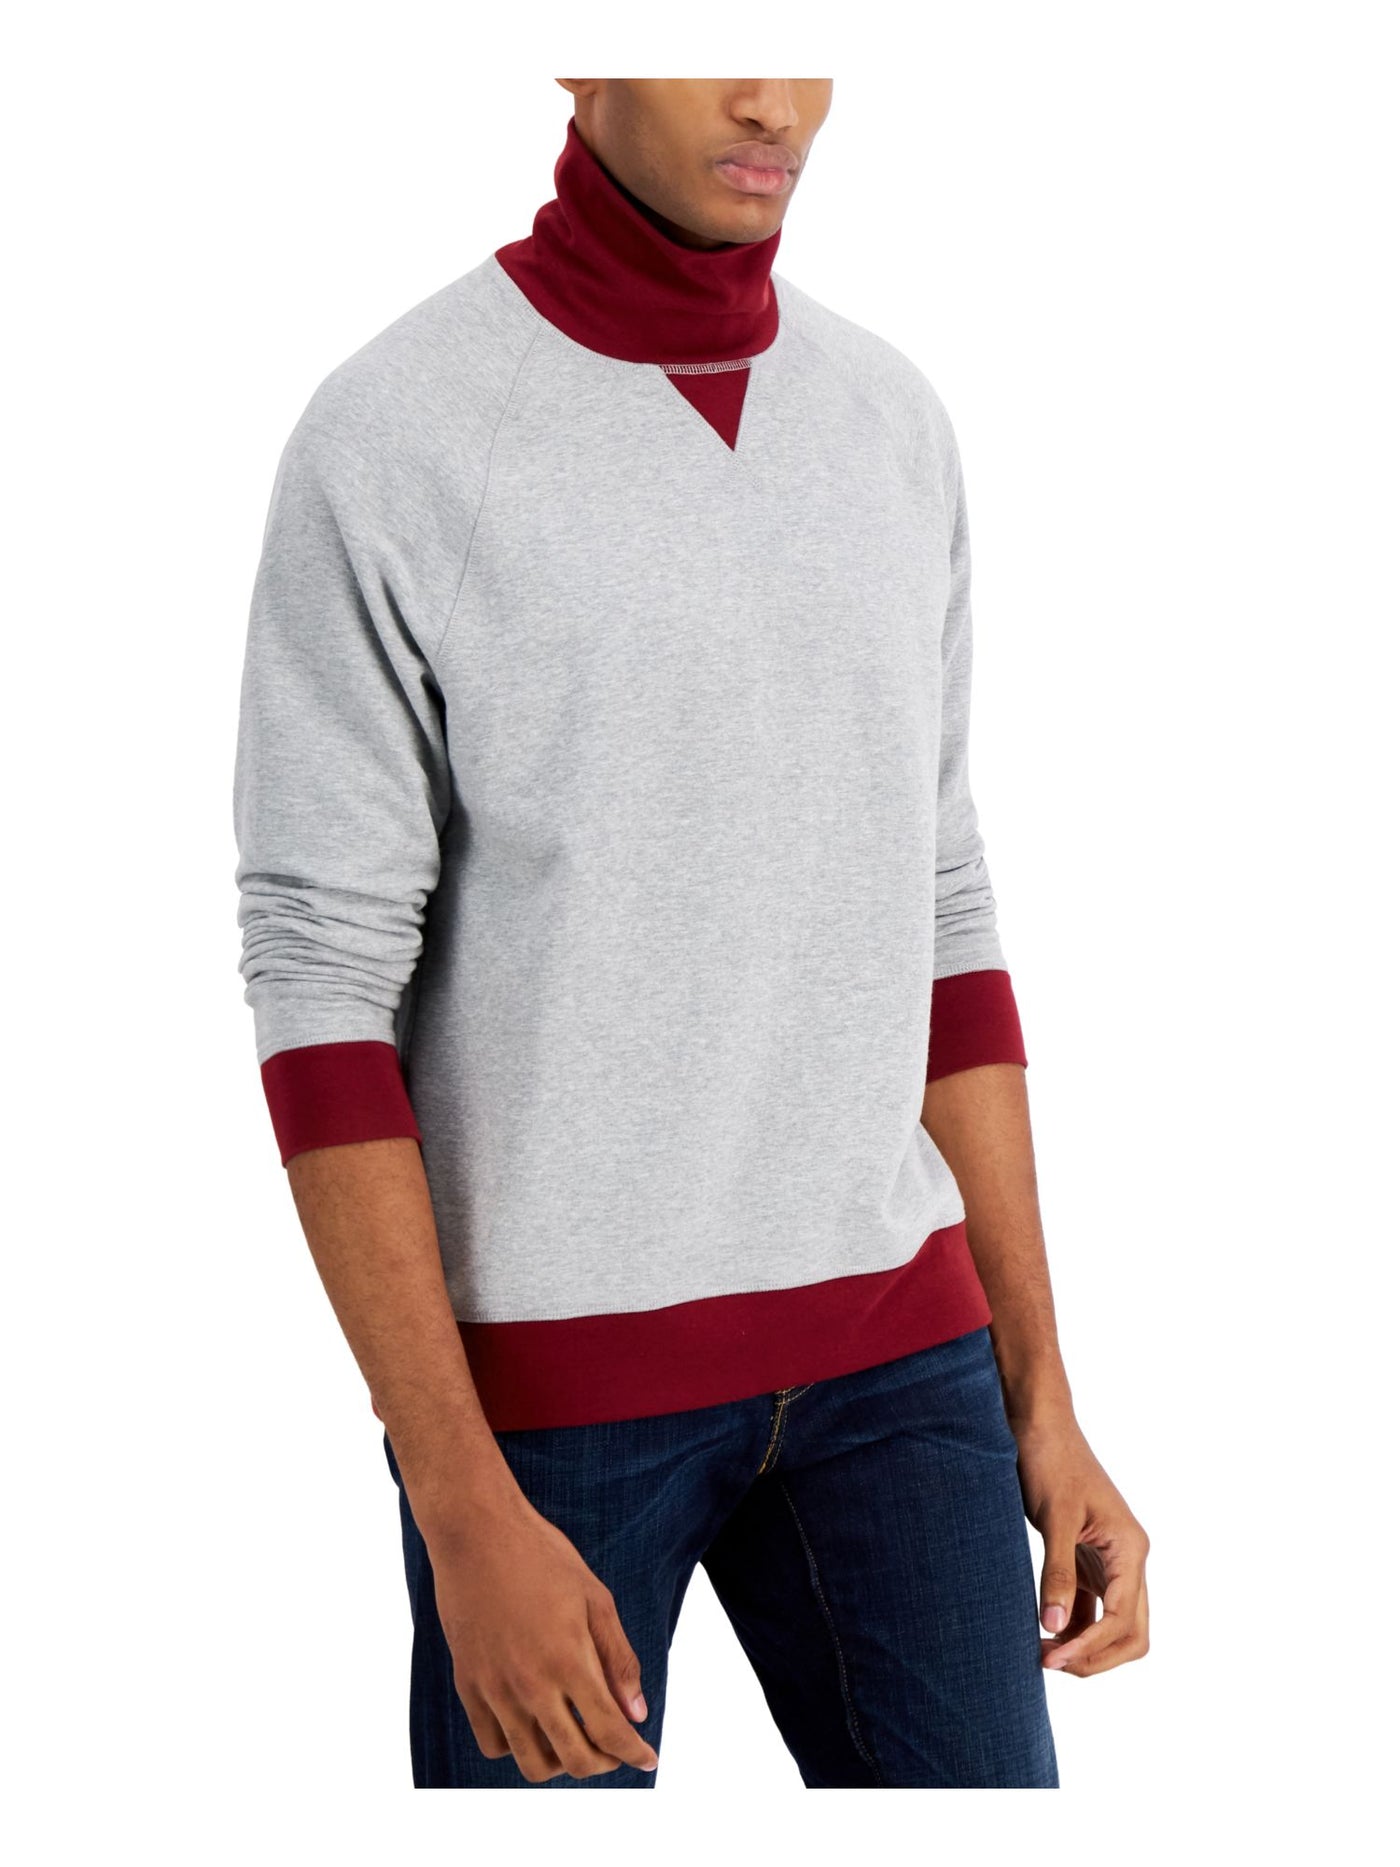 CLUBROOM Mens Gray Turtle Neck Classic Fit Fleece Sweatshirt S